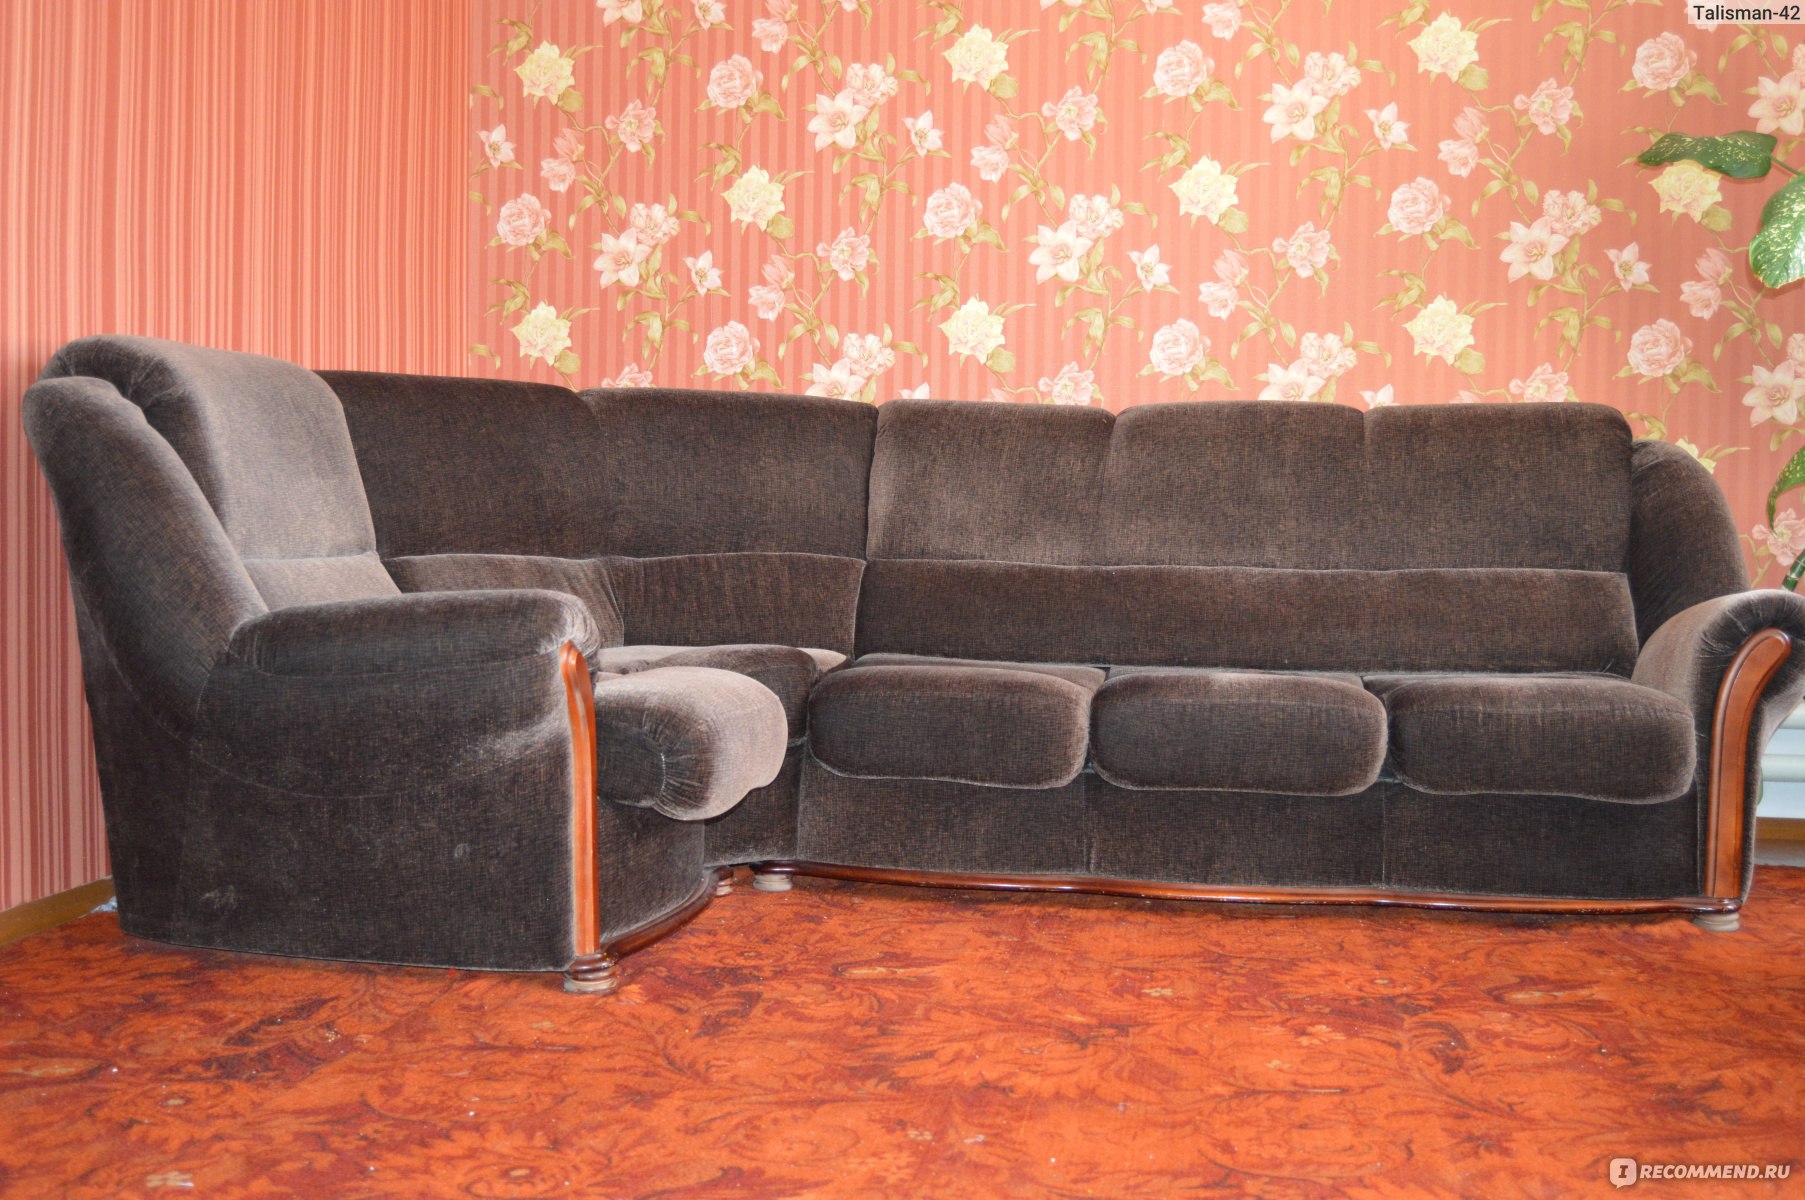 Покрывало для мягкой мебели KARBELTEX - «Разрекламированный универсальныйчехол (Еврочехол) на угловой диван! Полный разбор! И кому подойдет?»